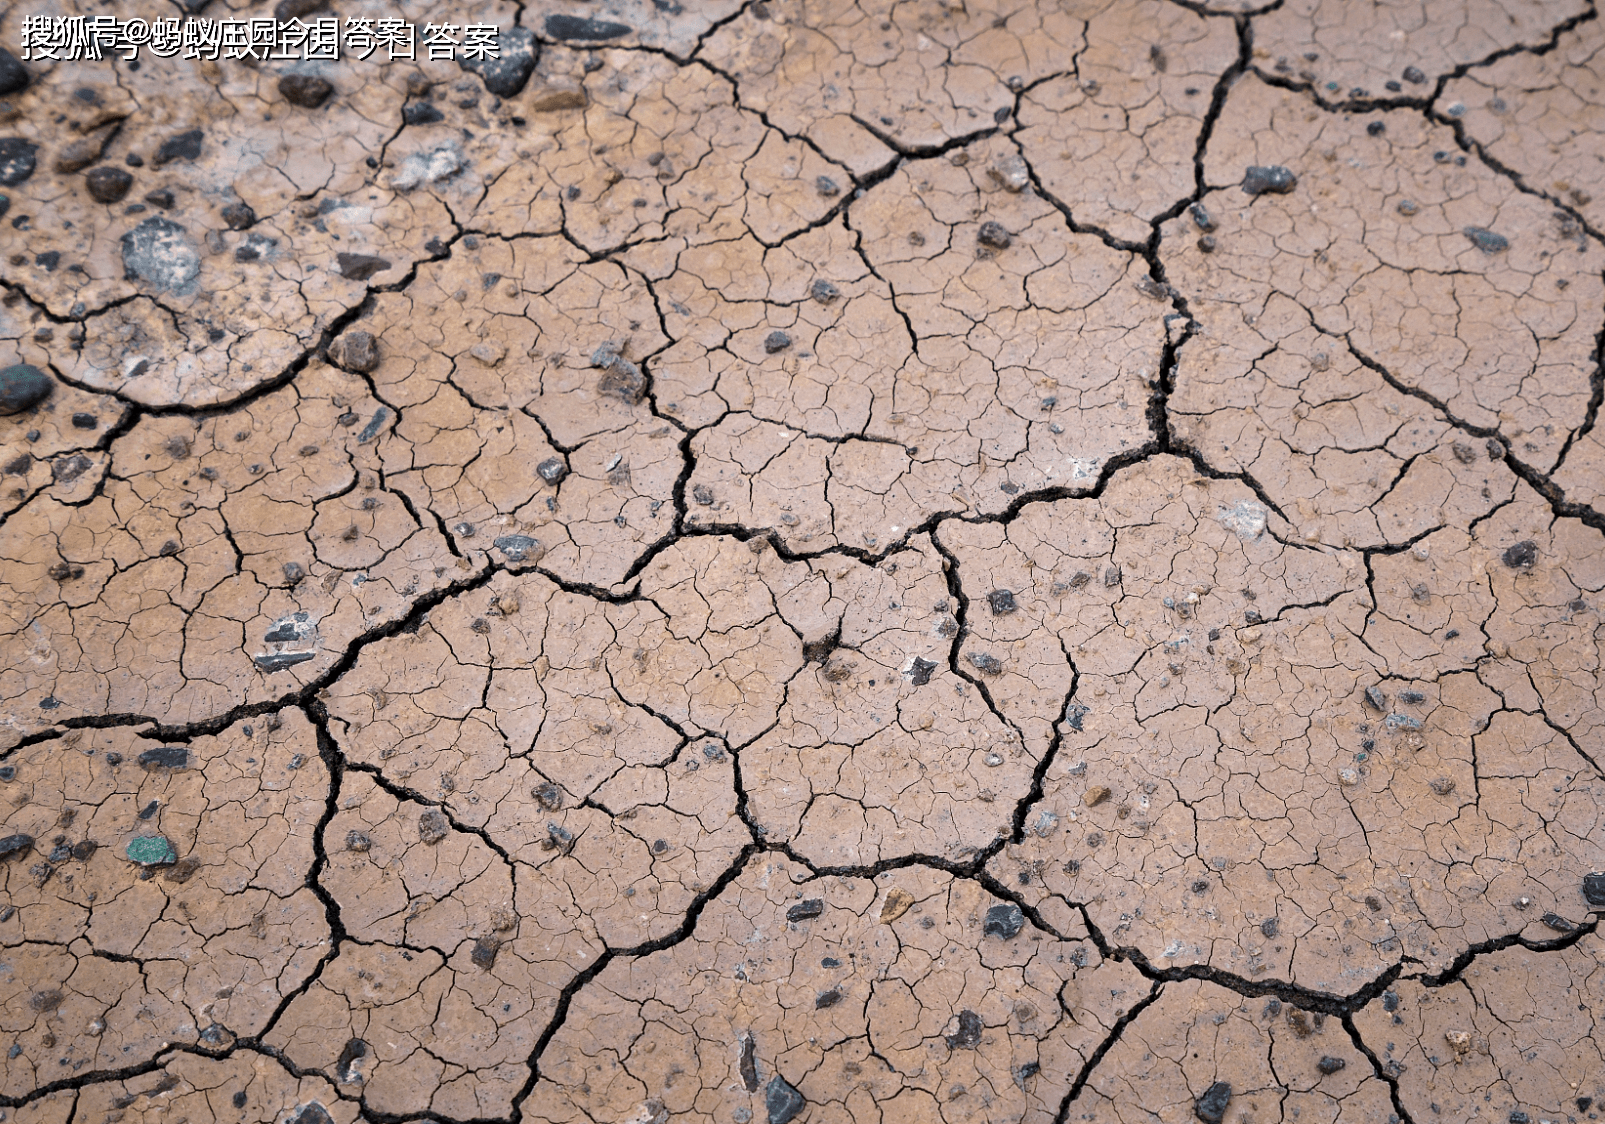 原创土壤大致可分为三层分别是底土层心土层和表土层 蚂蚁新村11月27